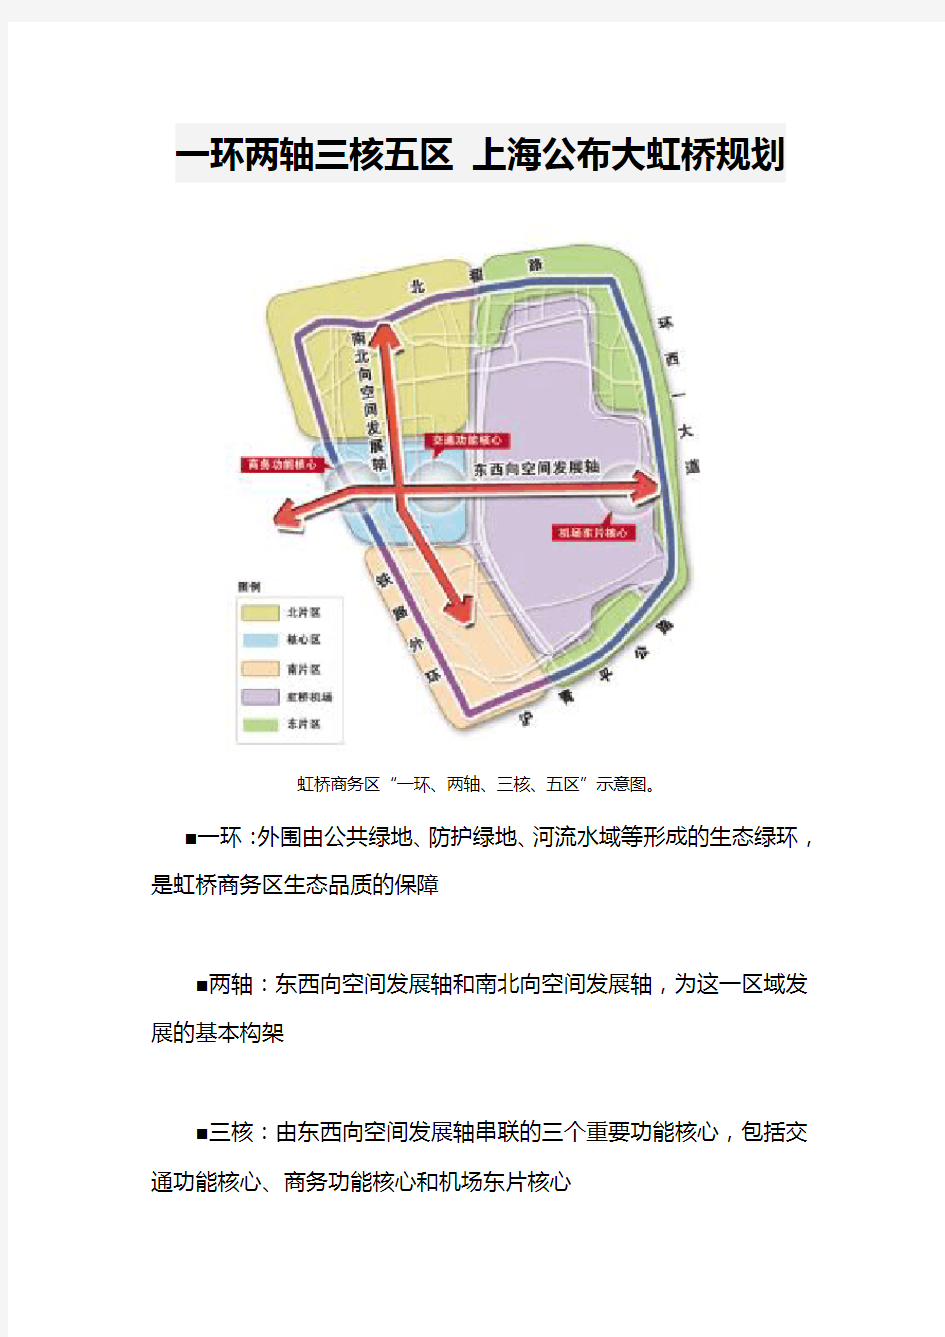 一环两轴三核五区 上海公布大虹桥规划